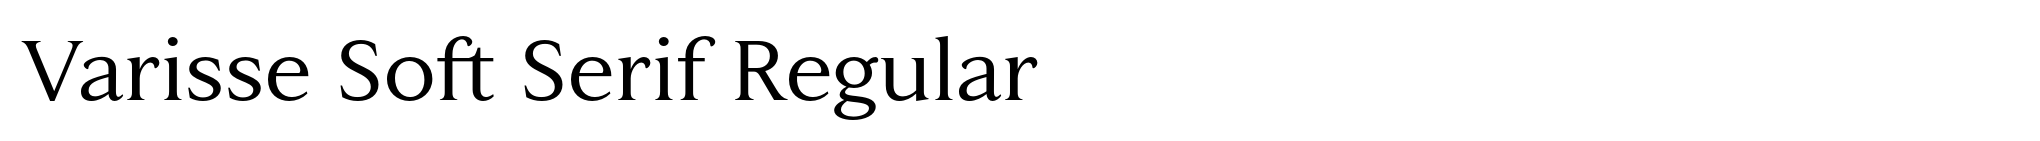 Varisse Soft Serif Regular image